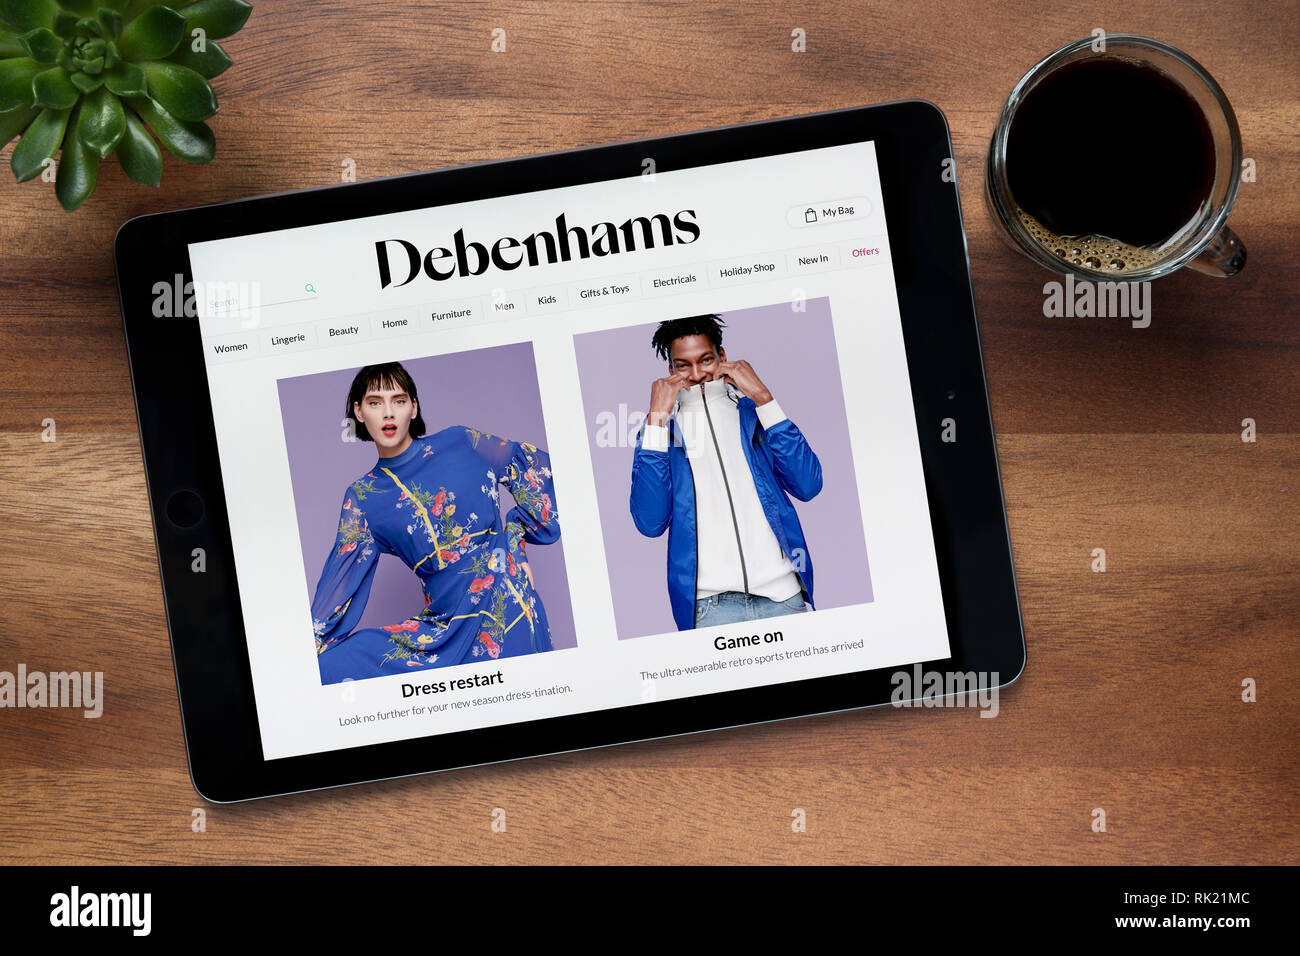 Die Website von Debenhams ist auf einem iPad Tablet gesehen, auf einer hölzernen Tisch zusammen mit einem Espresso und einem Haus Anlage (nur redaktionelle Nutzung). Stockfoto